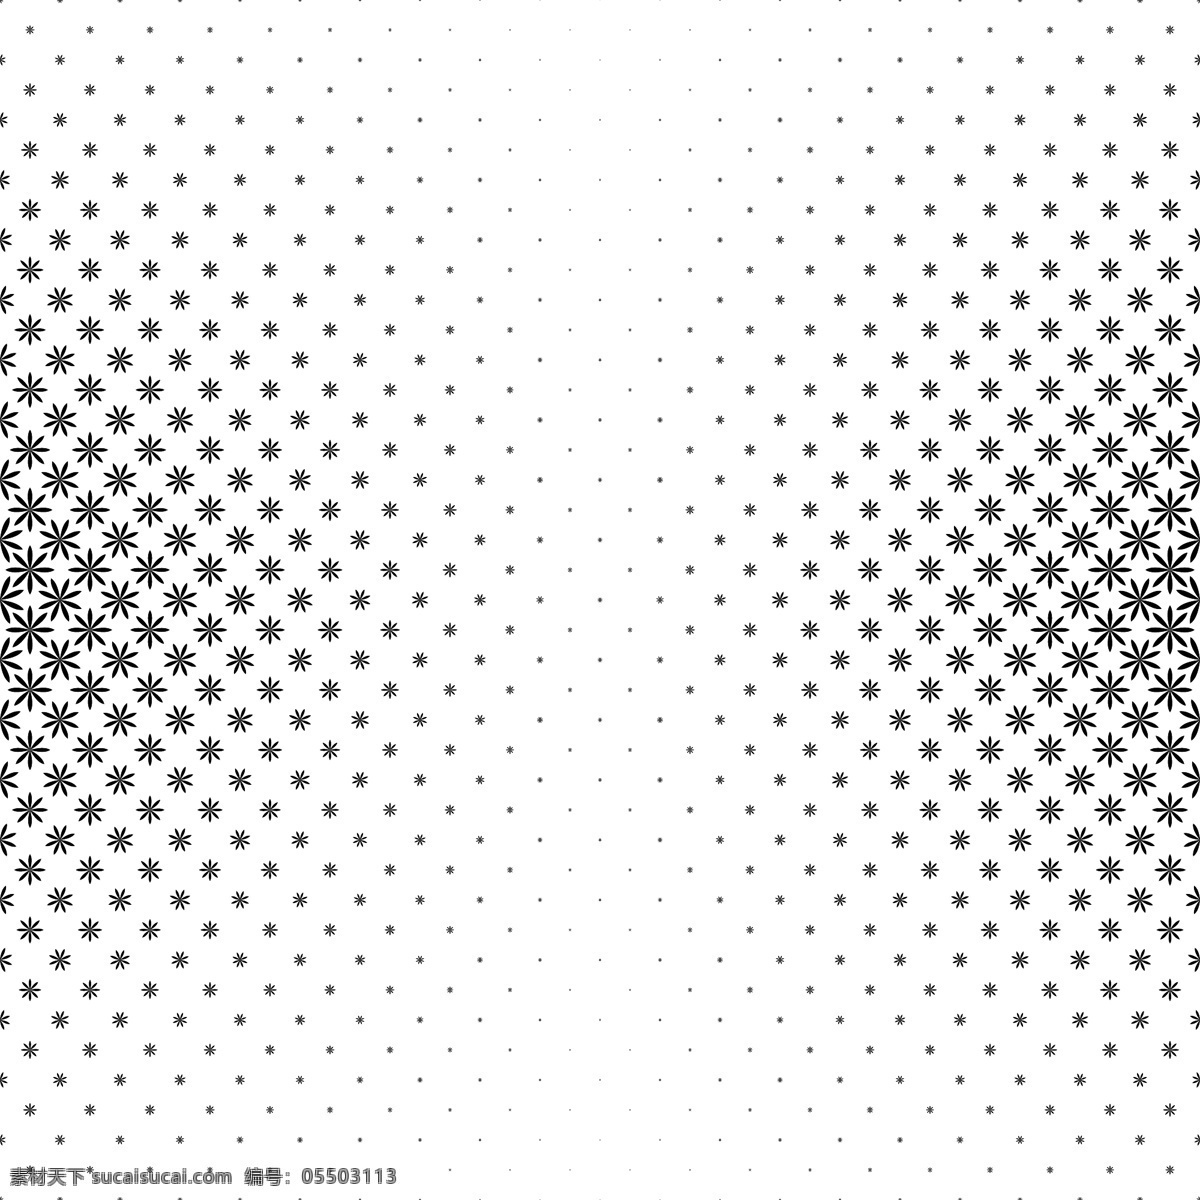 单色 几何 程式化 花卉 图案 矢量 背景 曲线 插图 小册子 抽象背景 海报 商业 抽象 封面 纹理 模板 纸张 宣传册模板 黑色背景 形状 布局 壁纸